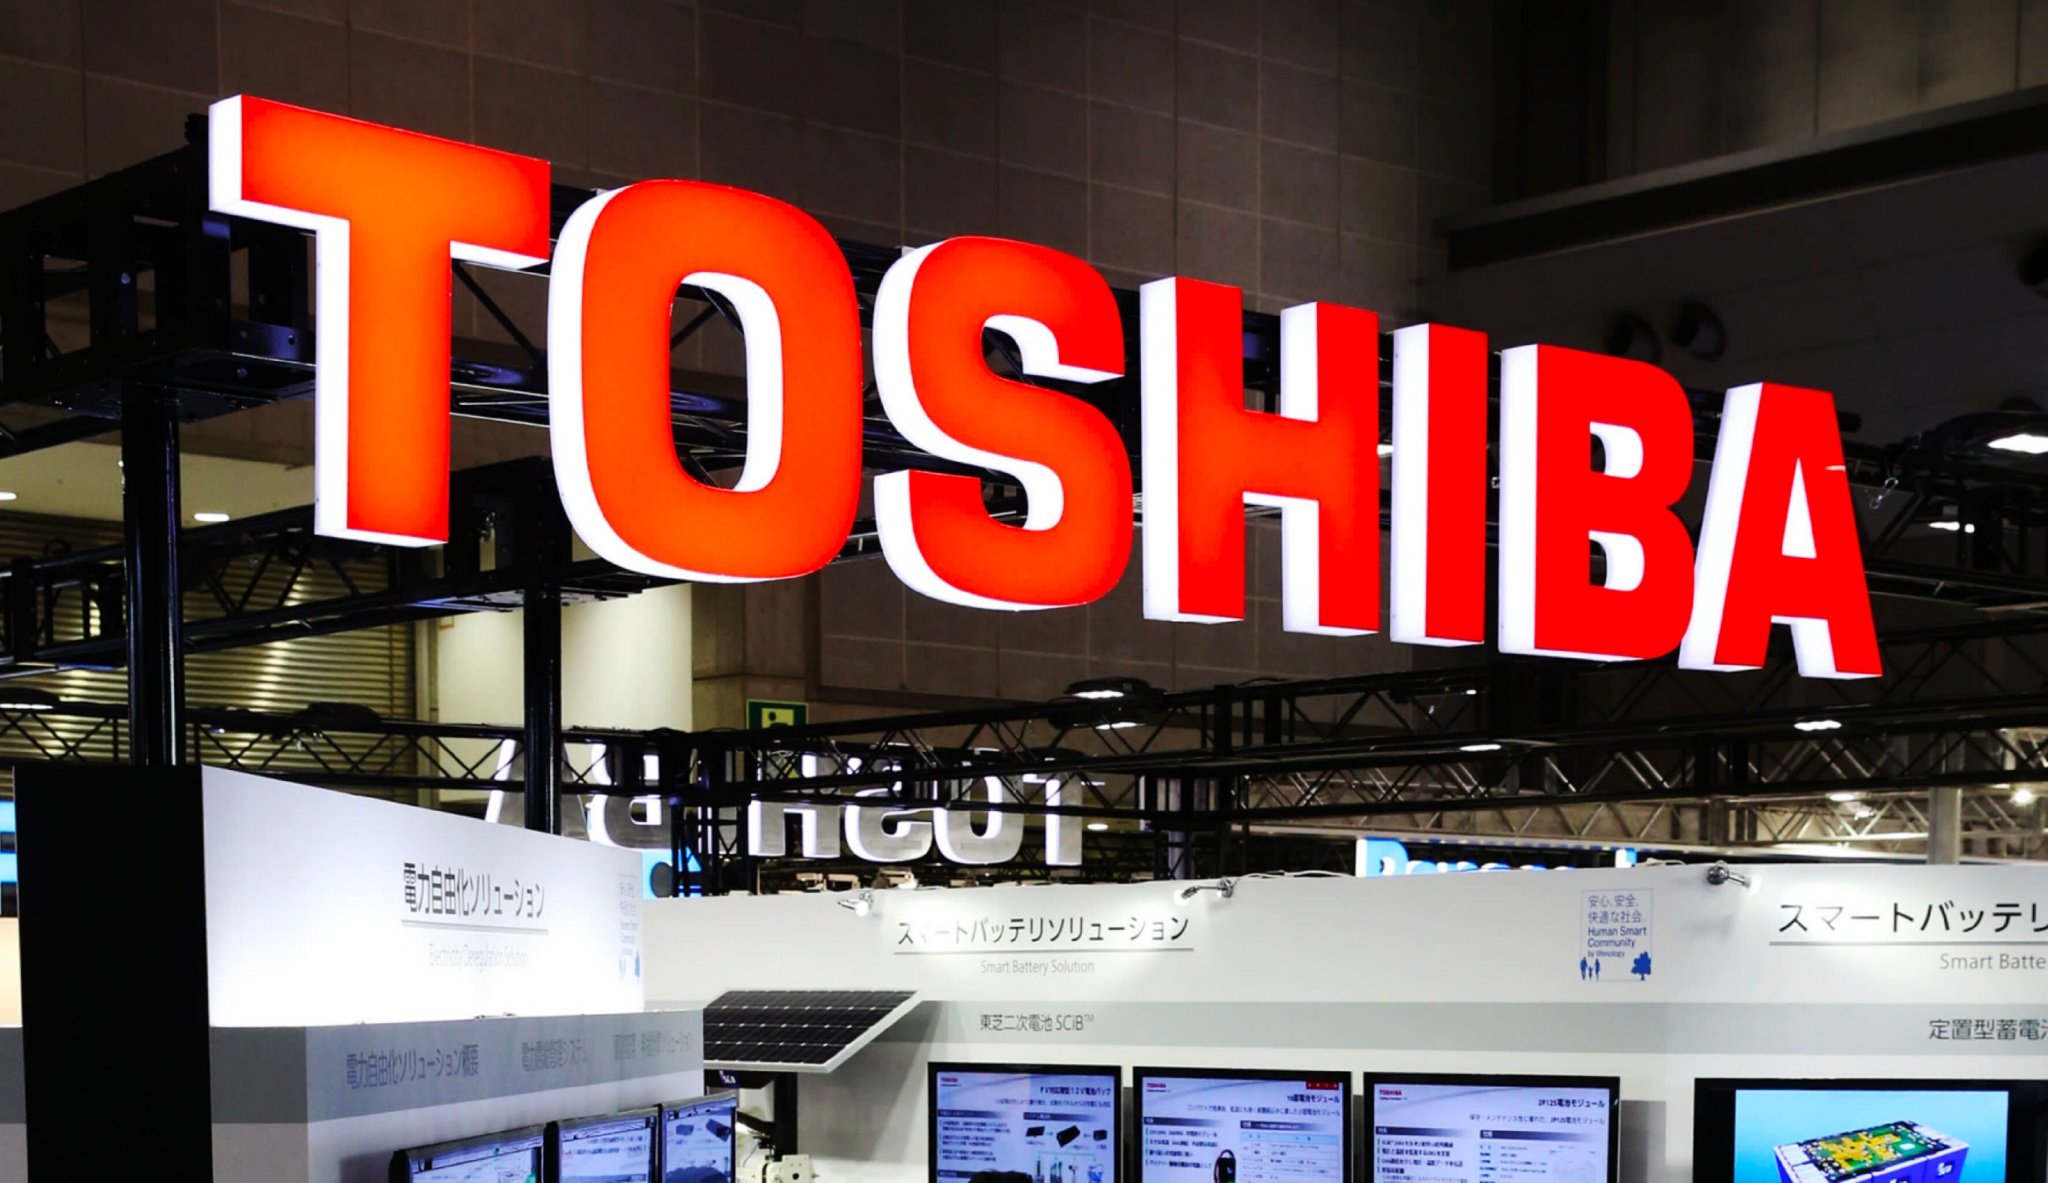 Từ Toshiba đến Sony: bài học về mô hình tăng trưởng đúng đắn của các hãng điện tử Nhật